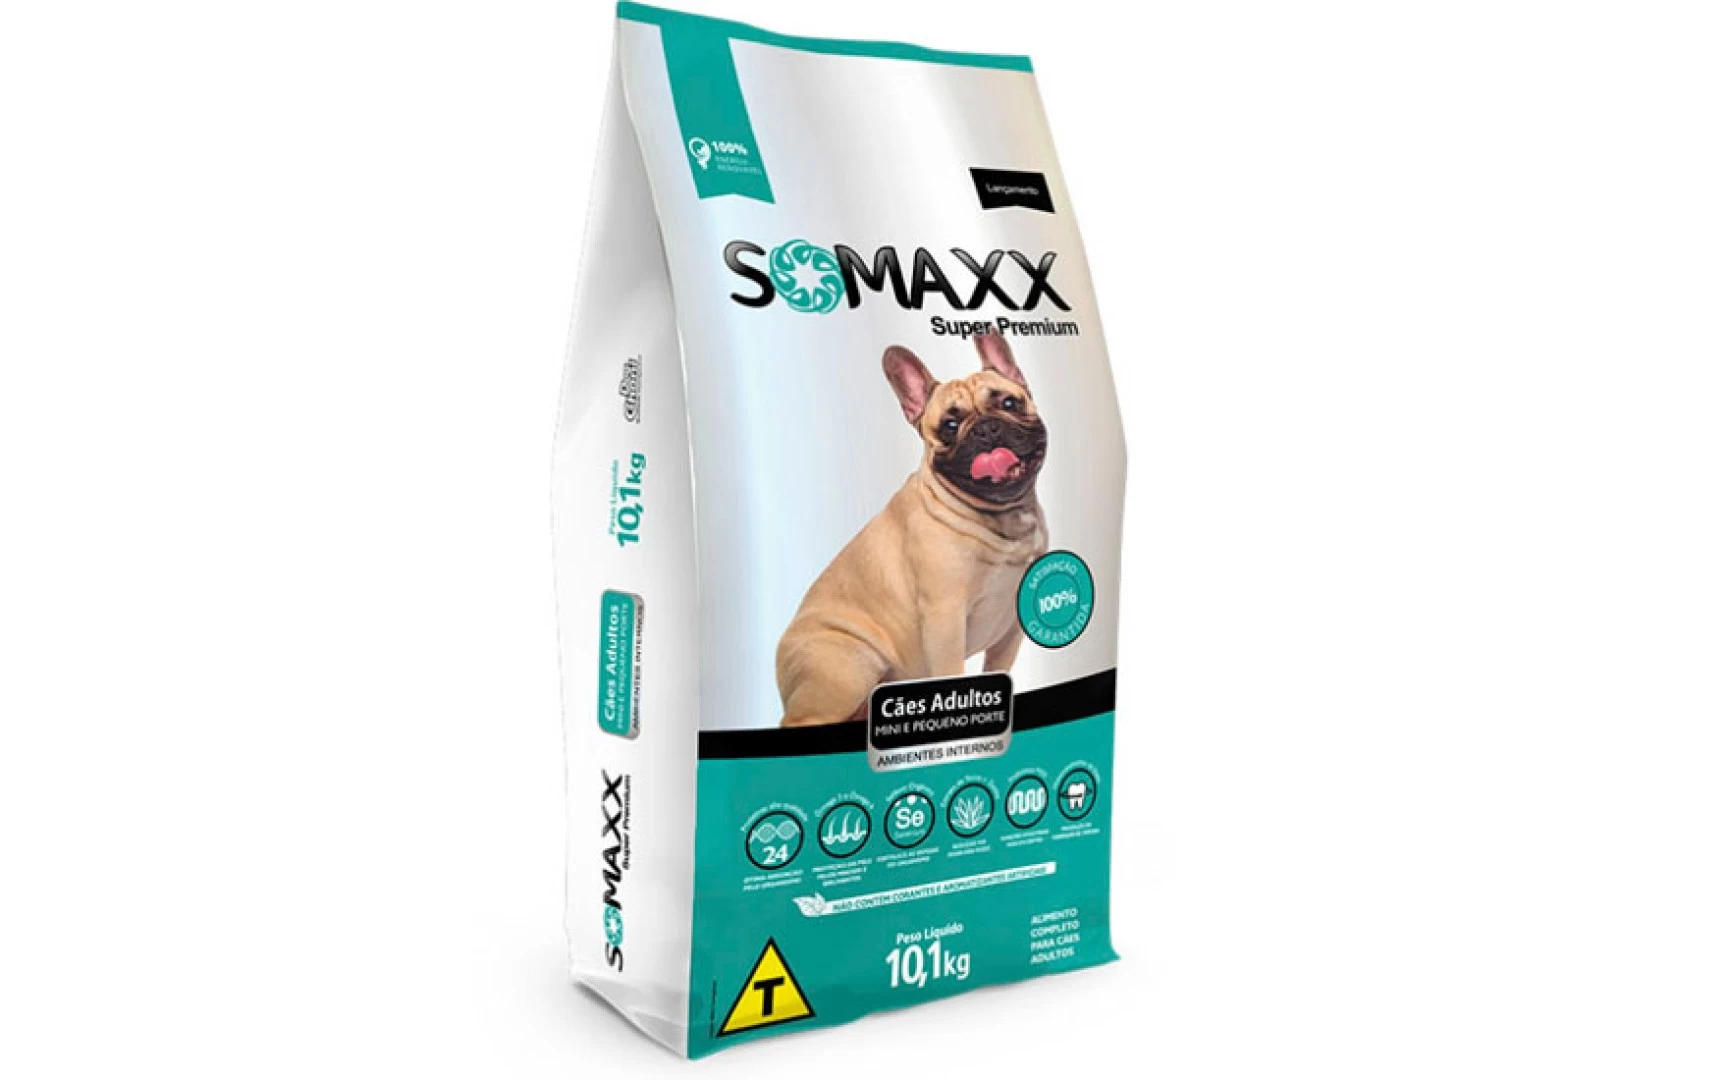 Somaxx Super Premium 